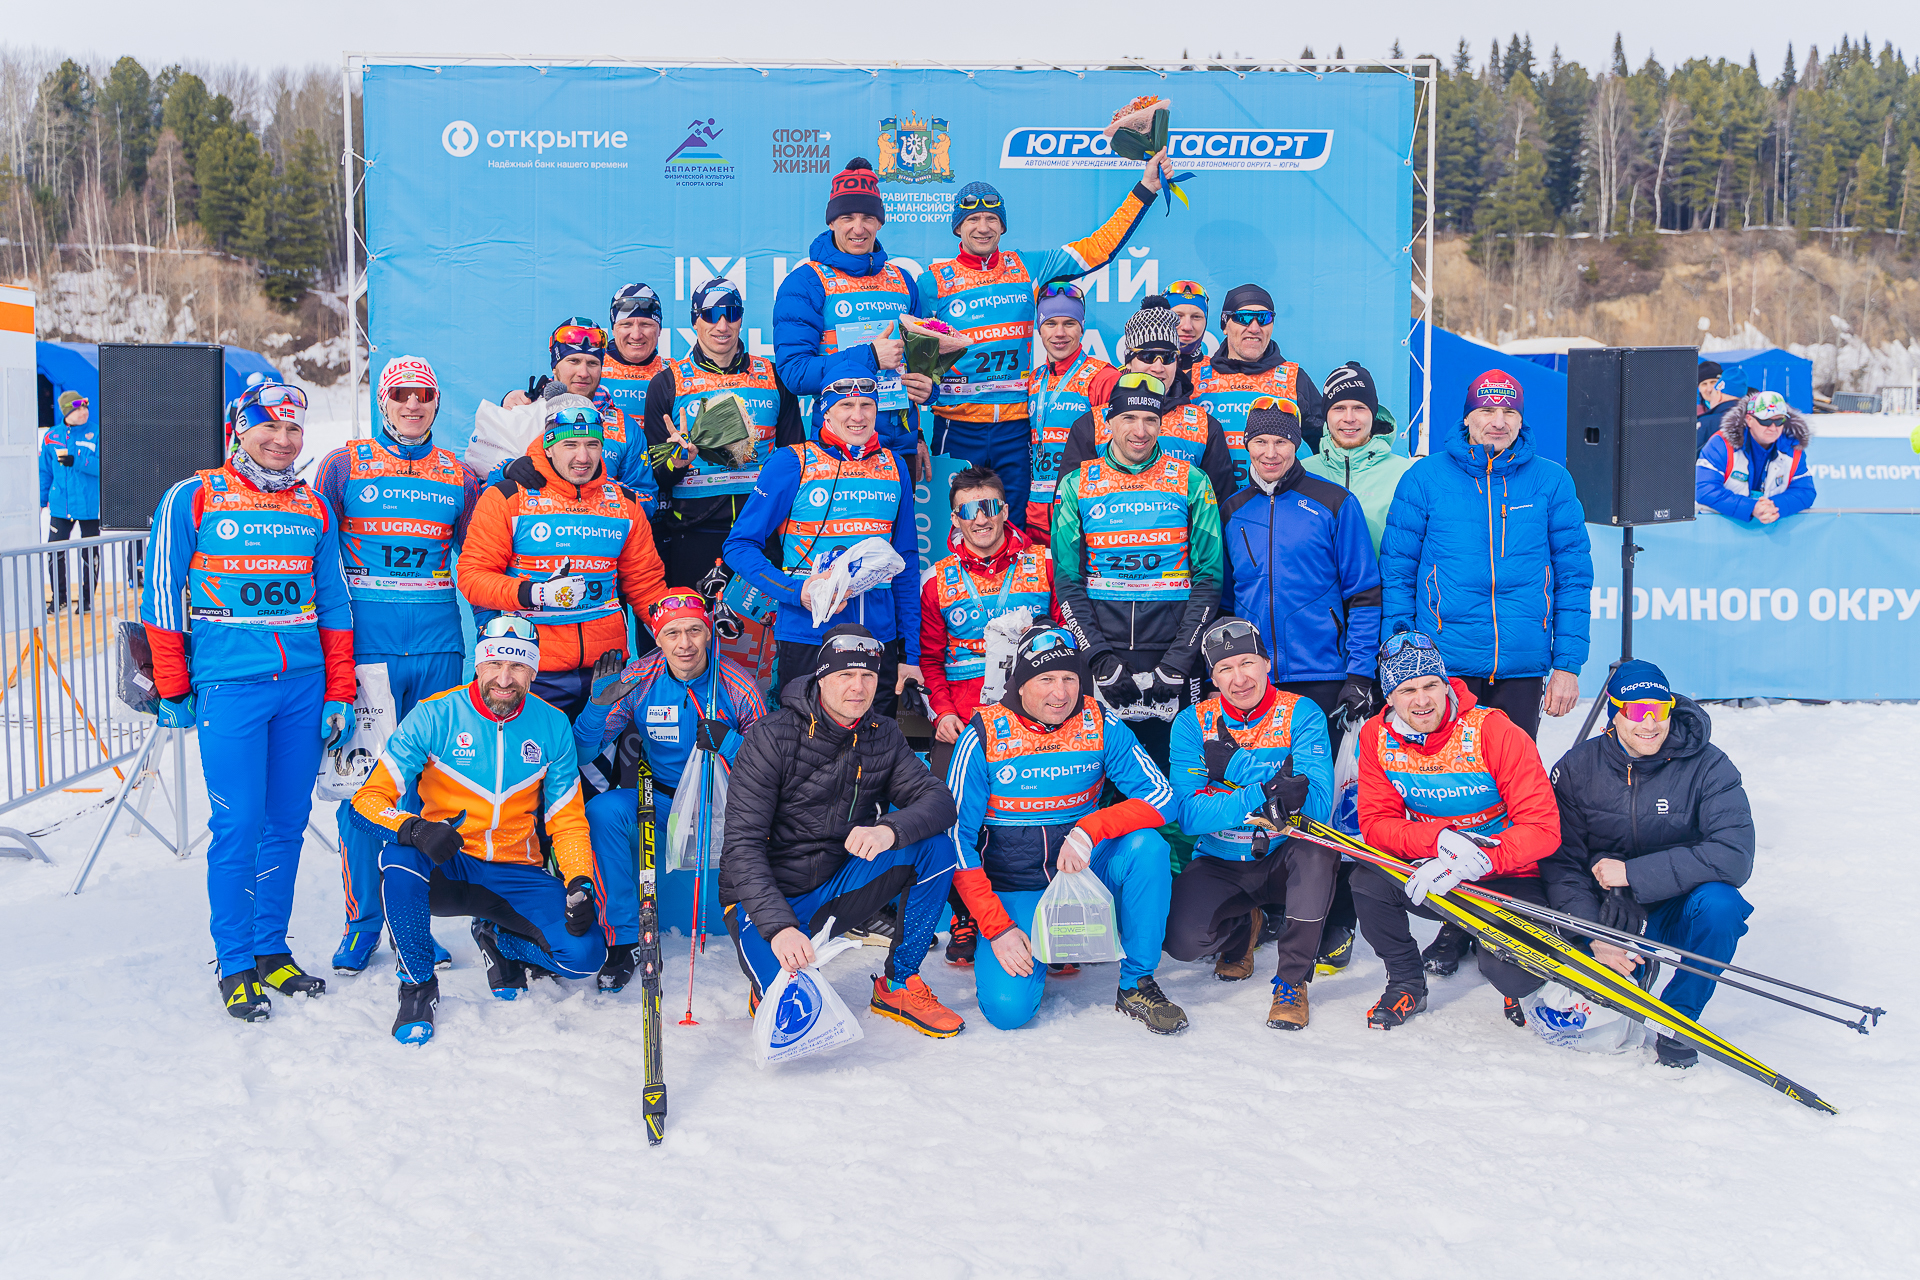 Банк «Открытие»: Названы победители первого дня Югорского лыжного марафона